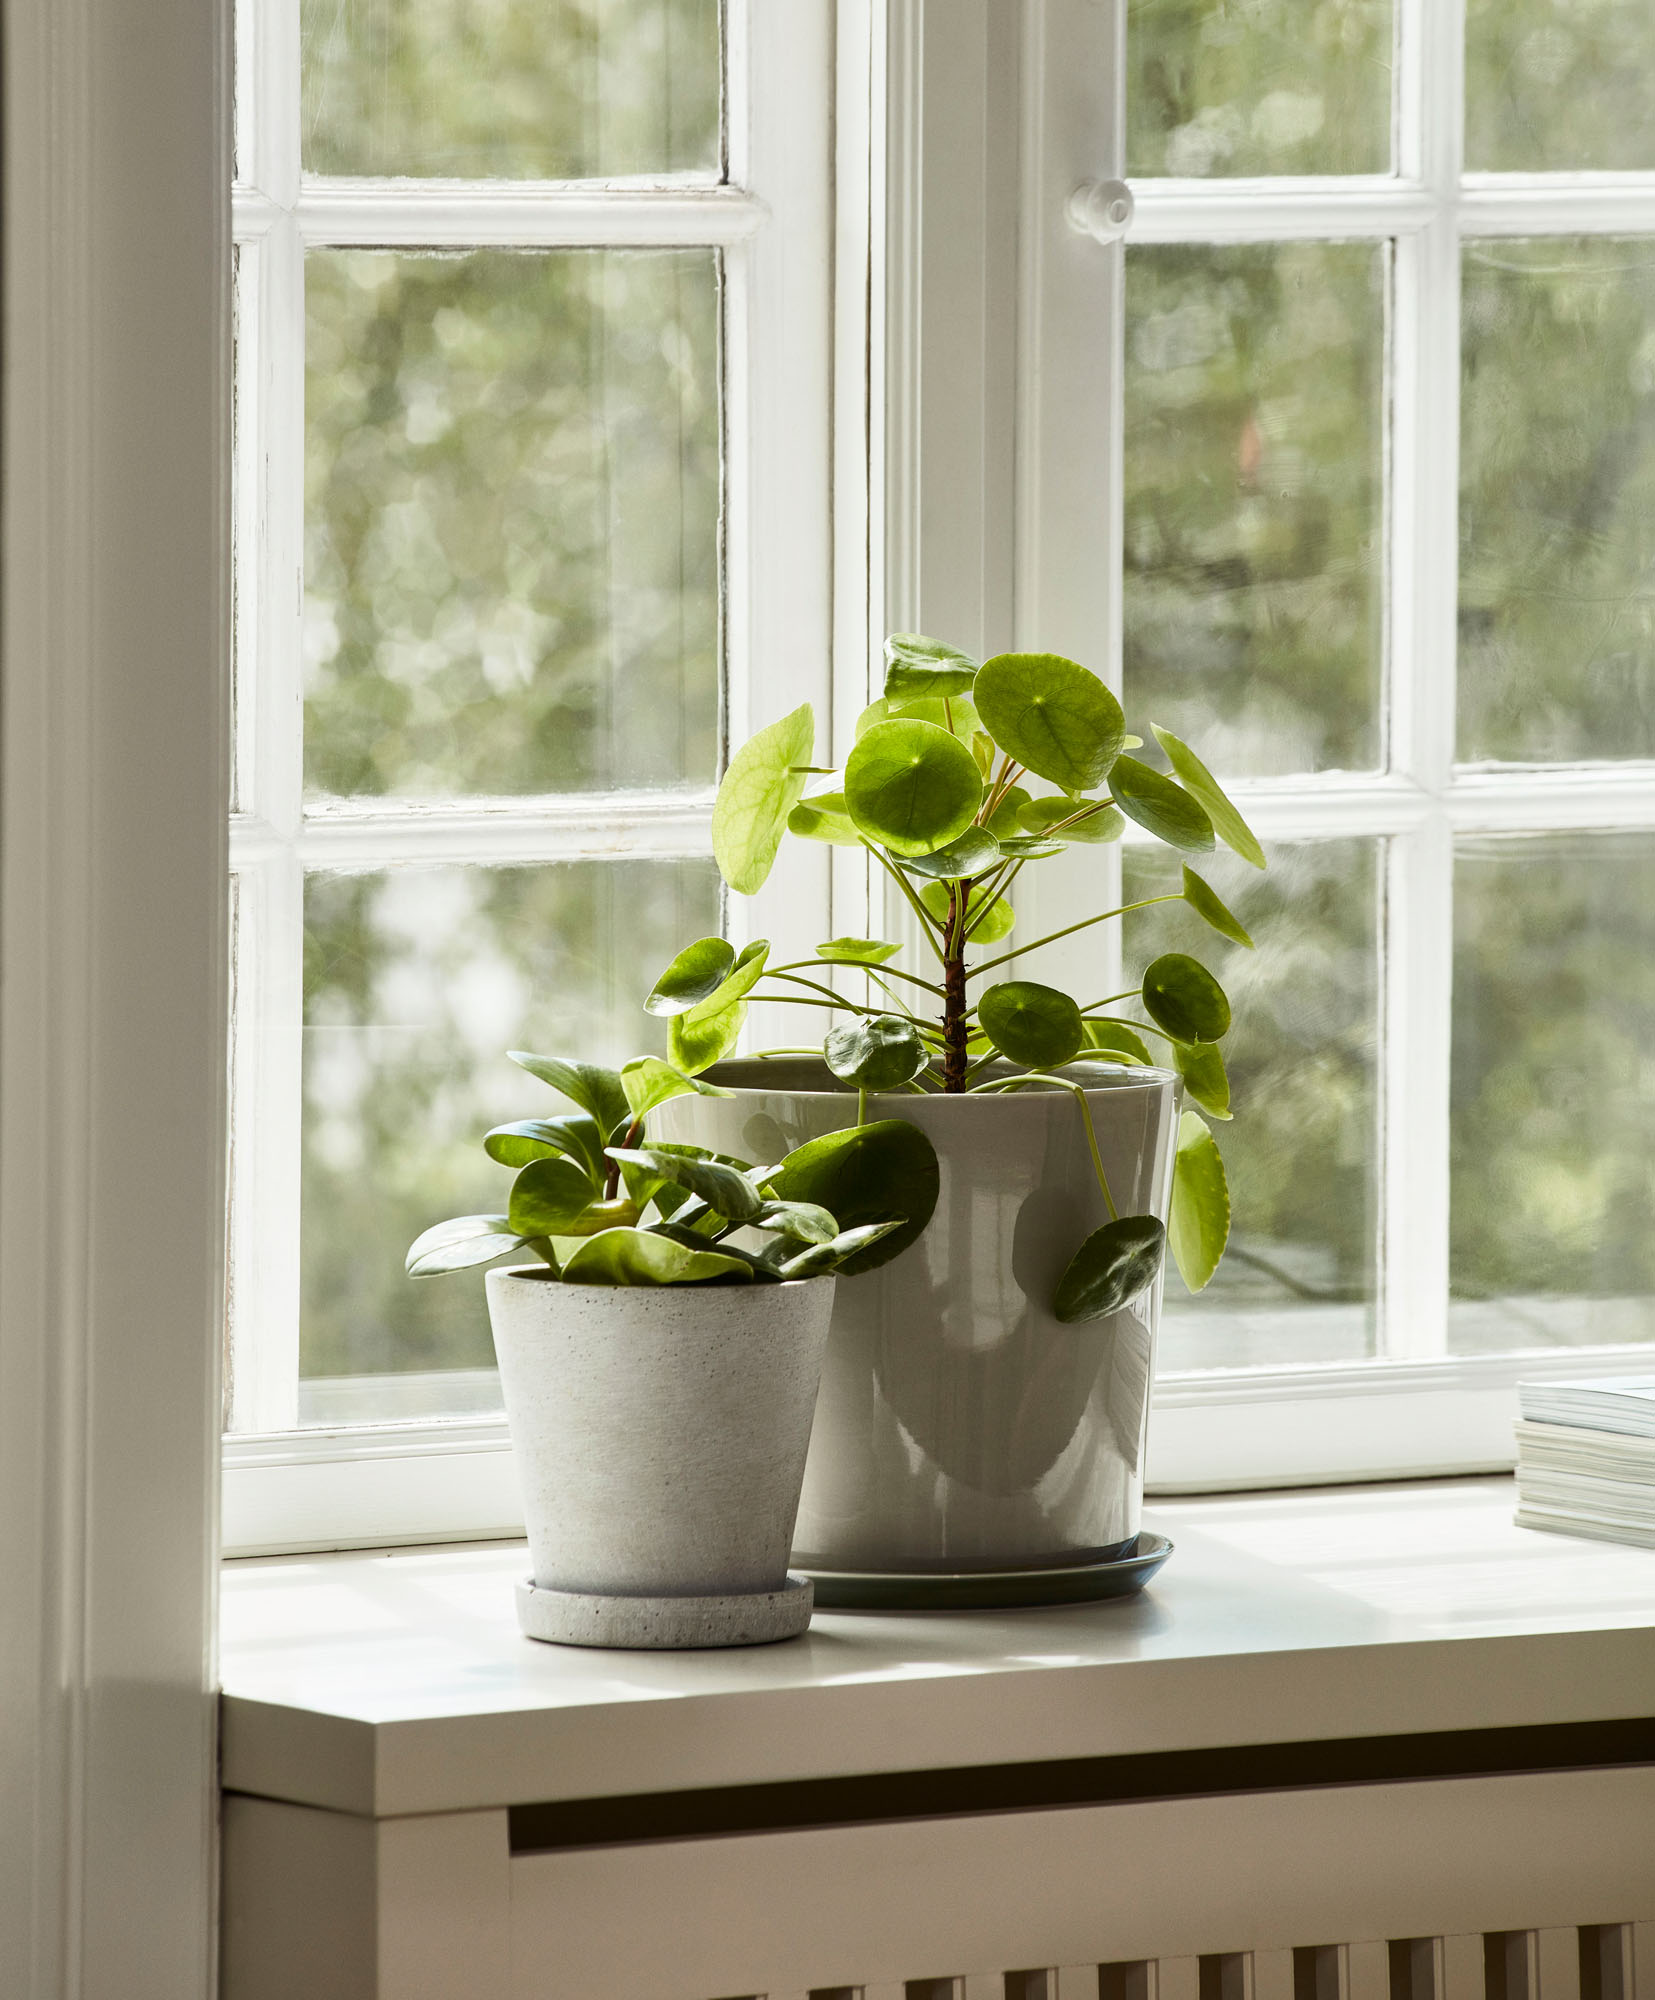 plants in pots on window sill